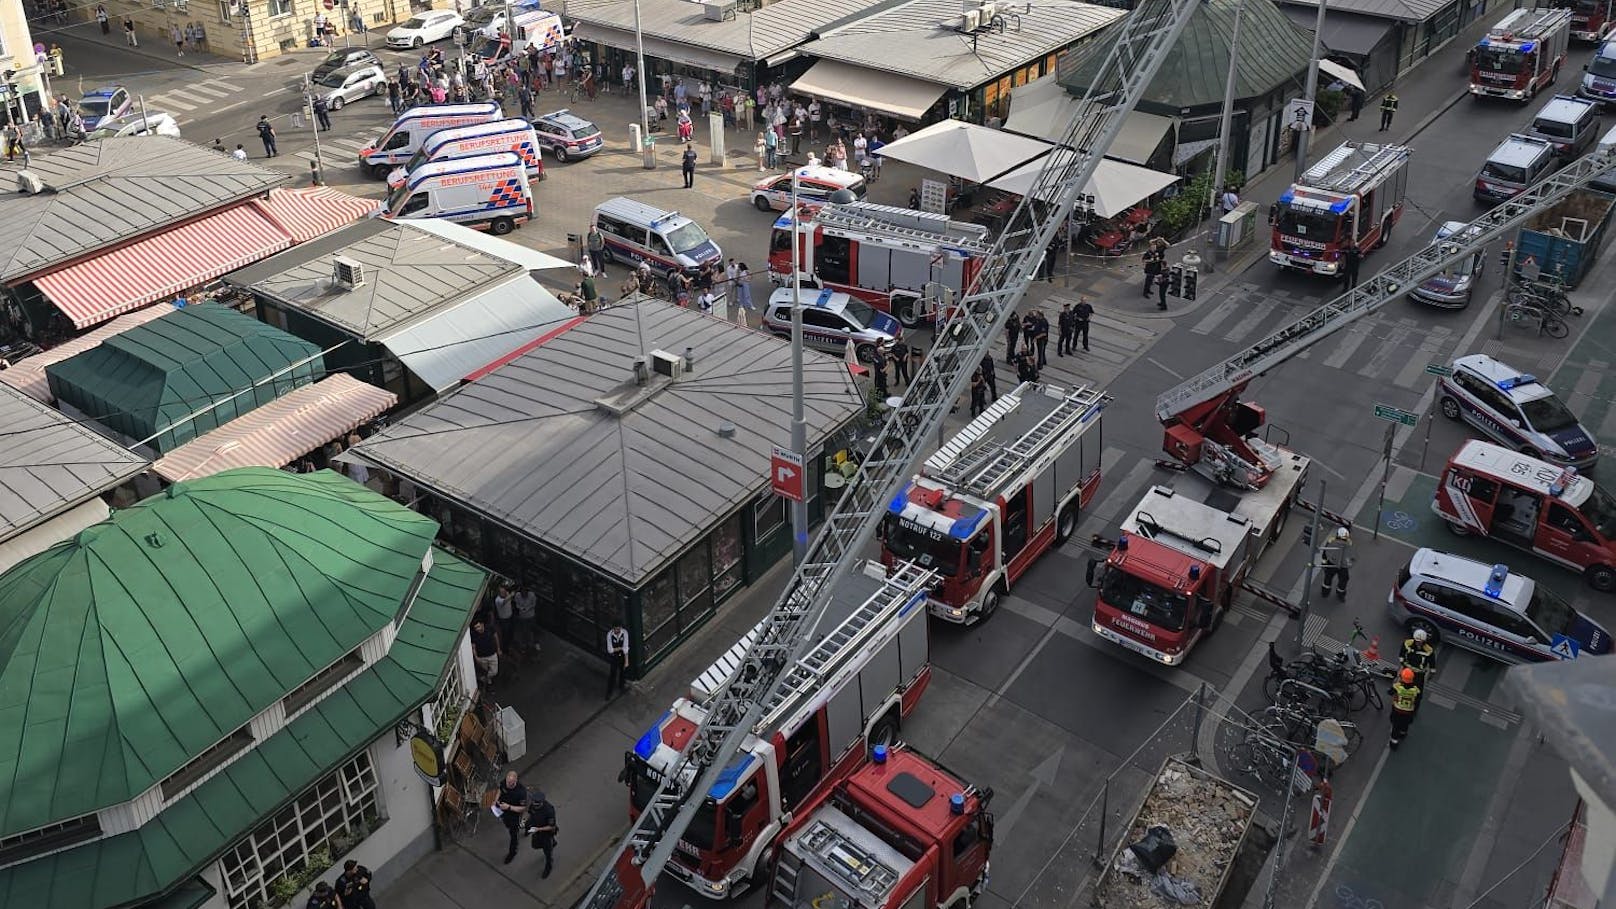 Explosion in Wohnhaus! Verletzte bei Großbrand in Wien